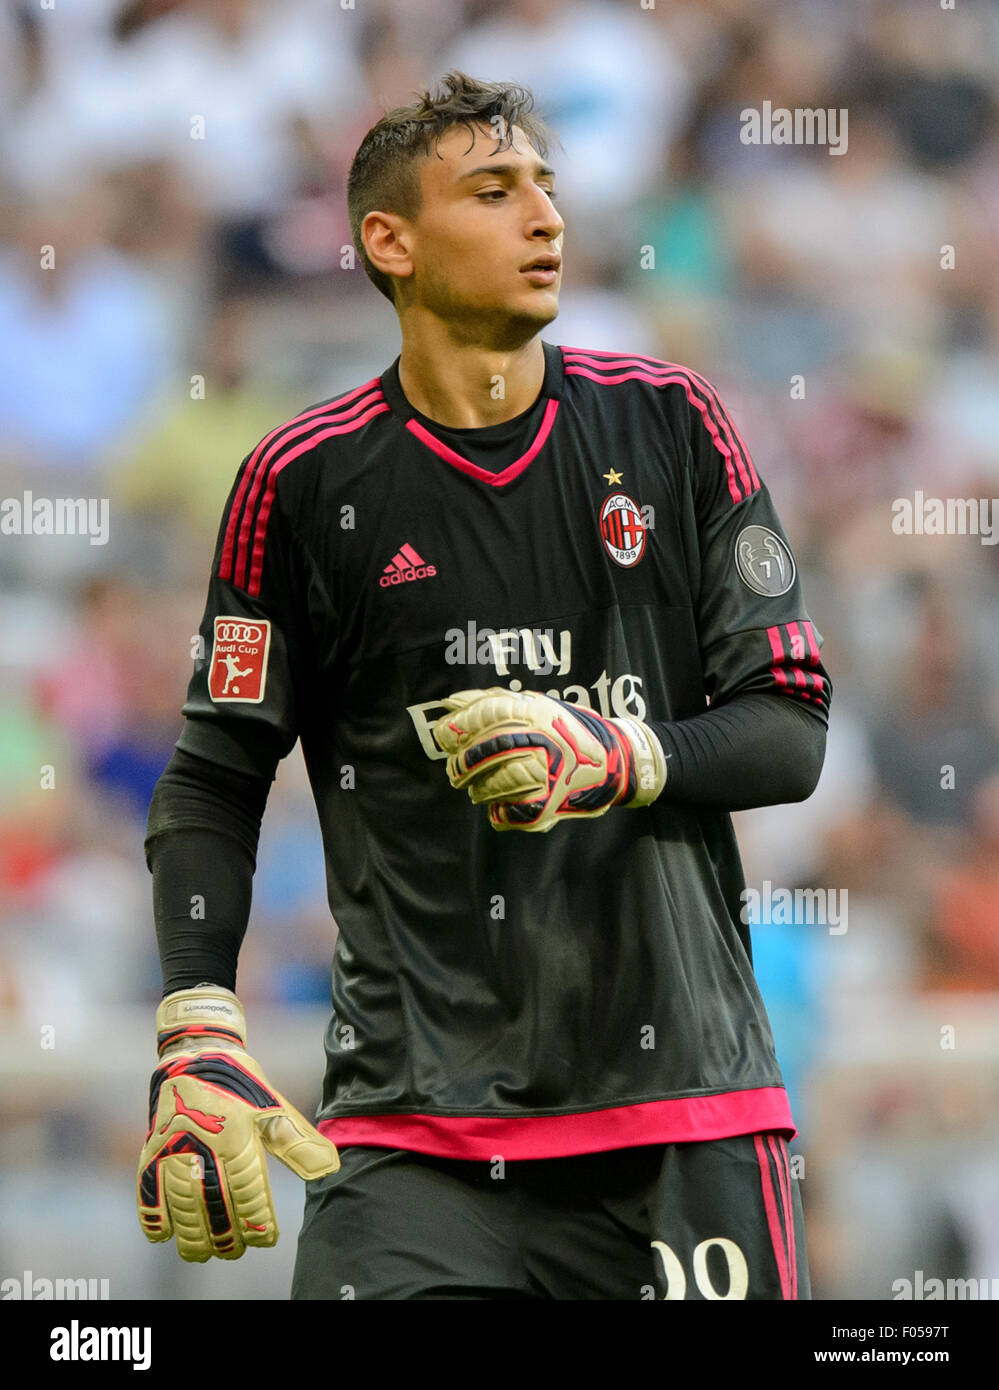 AC Milan's goalkeeper Gianluigi Donnarumma Stock Photo - Alamy